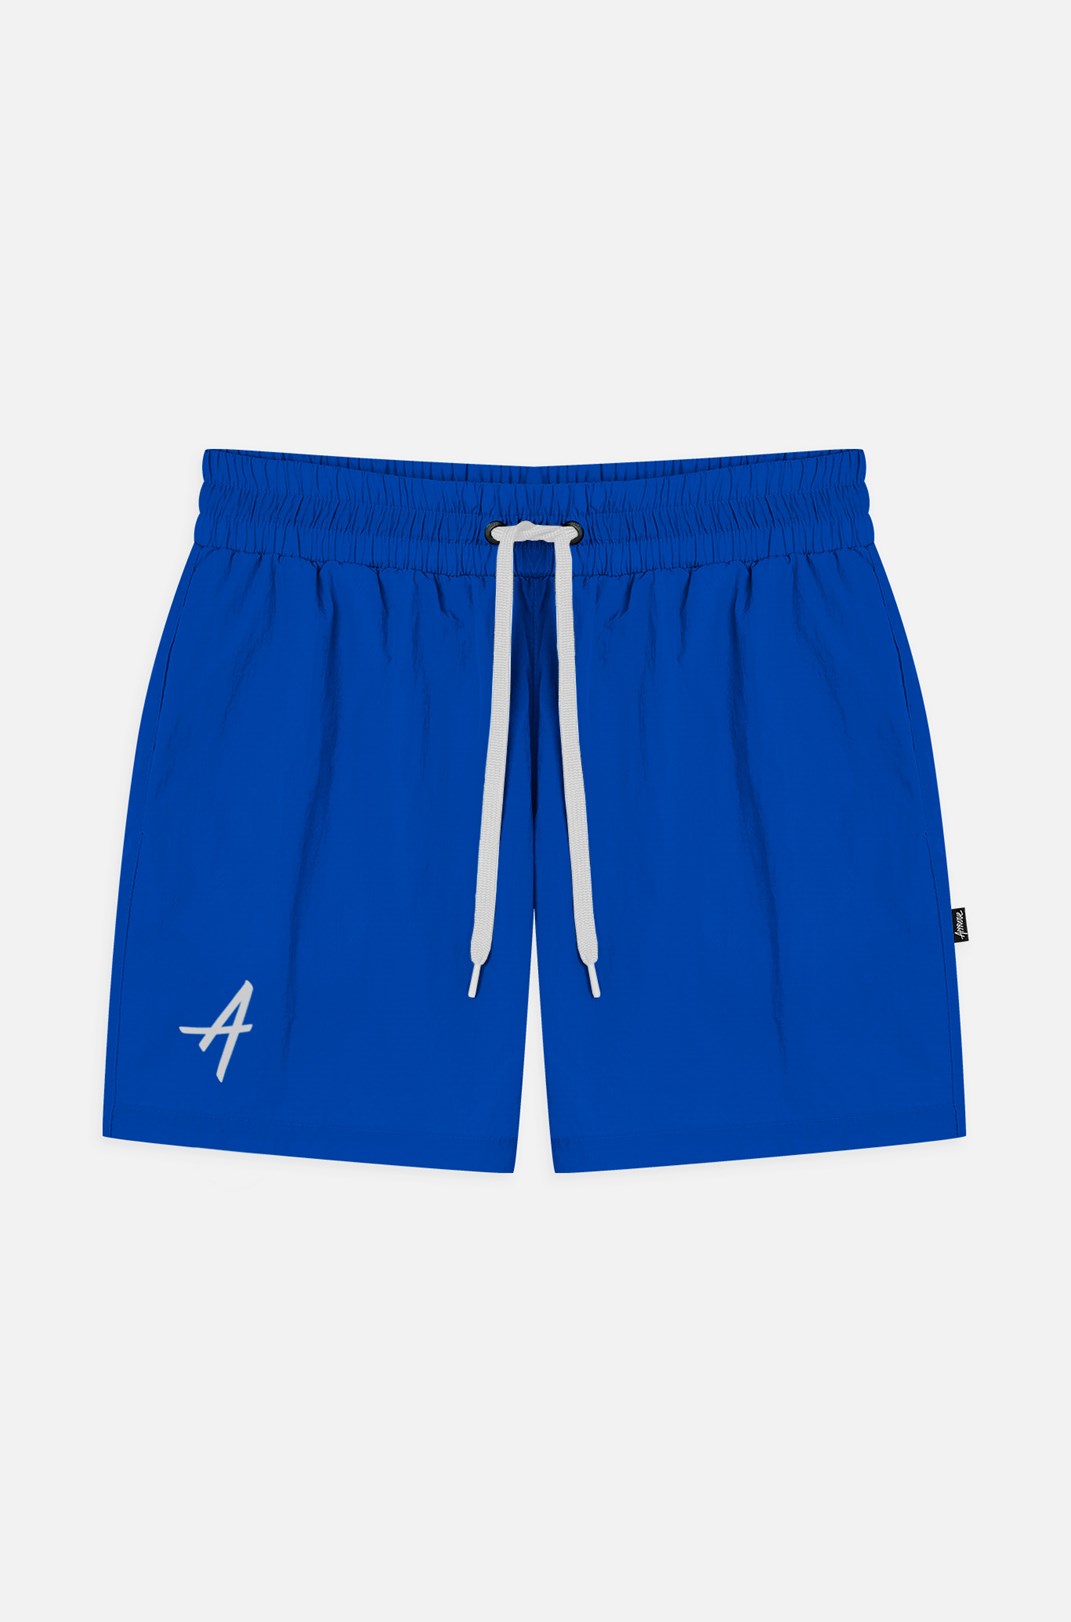 Shorts Approve Basic Azul Bic